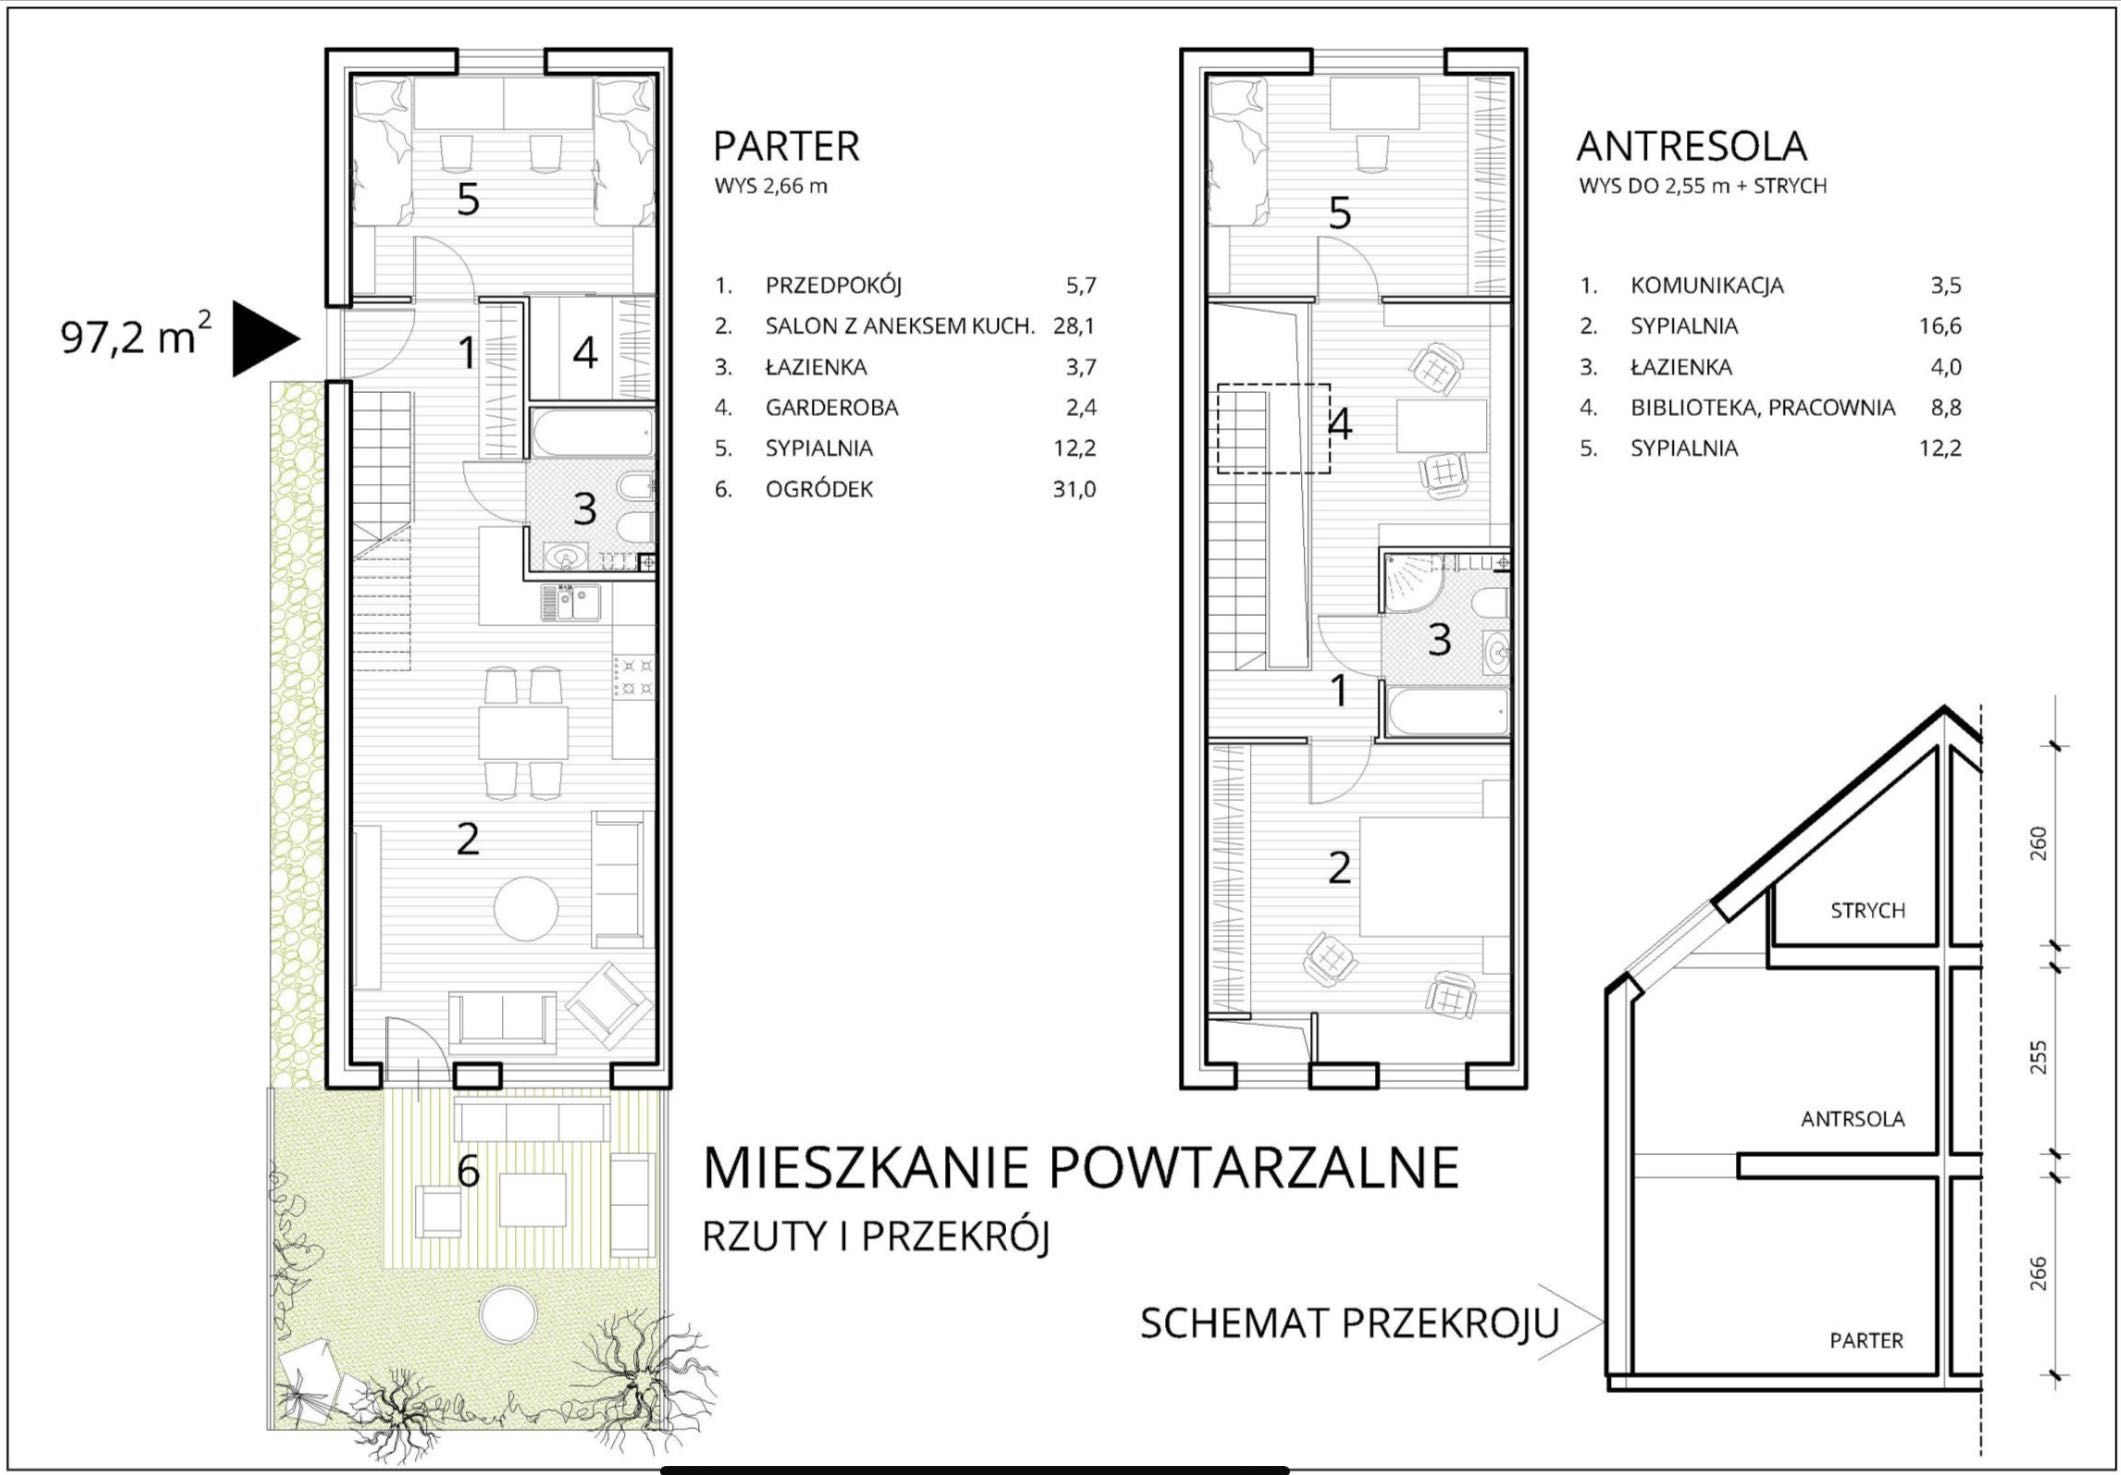 Działka budowlana tuż koło Krakowa - okazja dla dewelopera, 777 m2 PUM